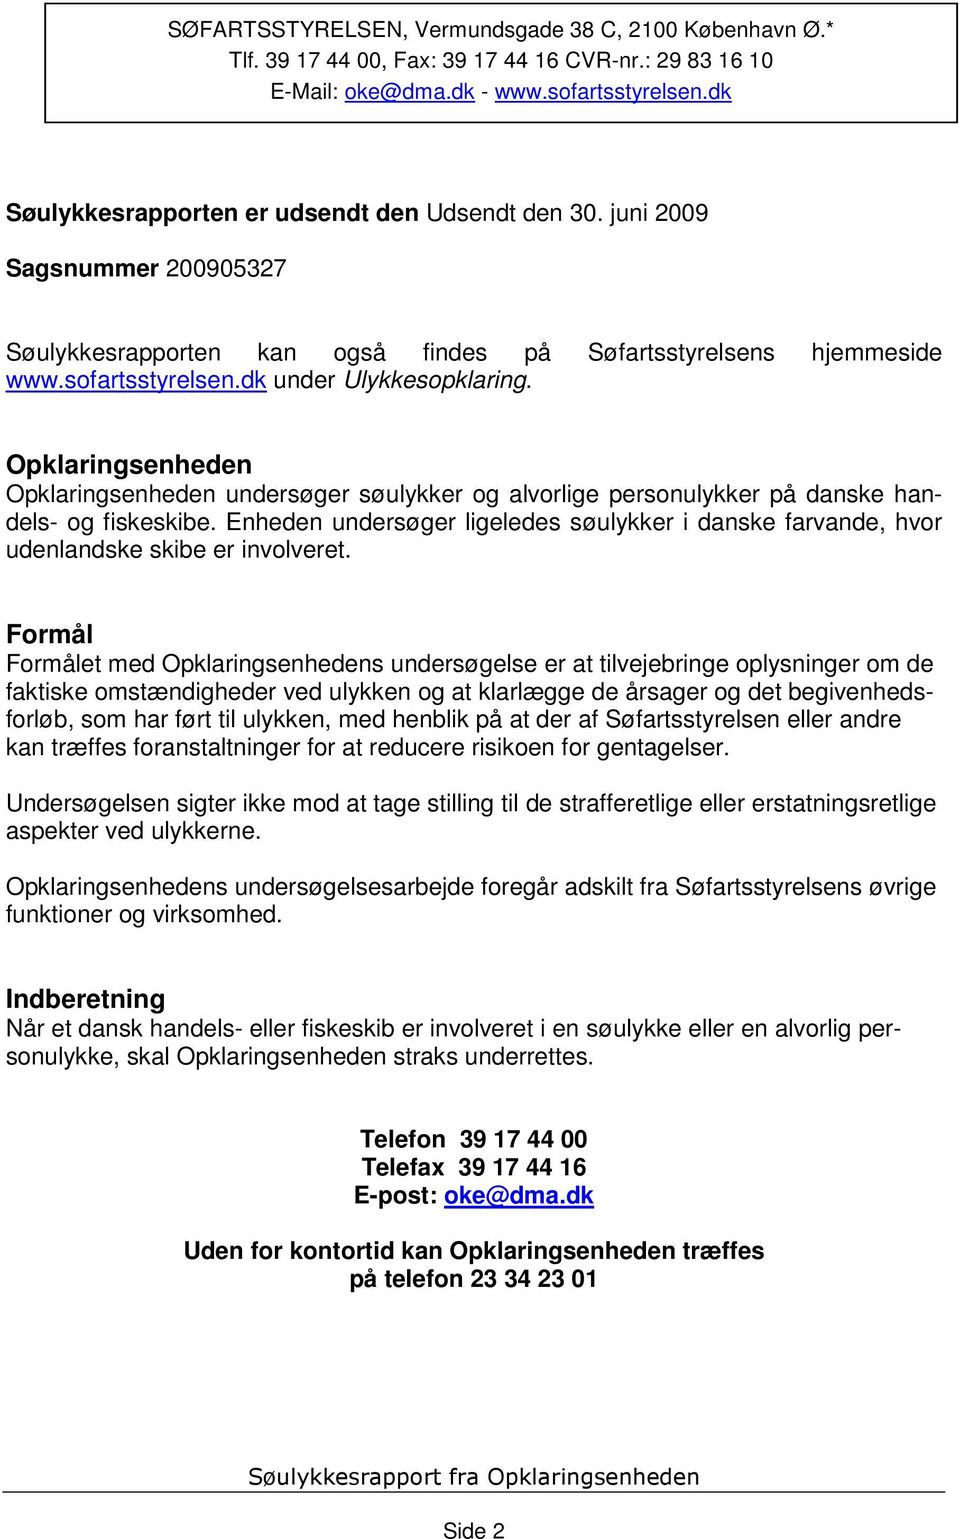 Opklaringsenheden Opklaringsenheden undersøger søulykker og alvorlige personulykker på danske handels- og fiskeskibe.